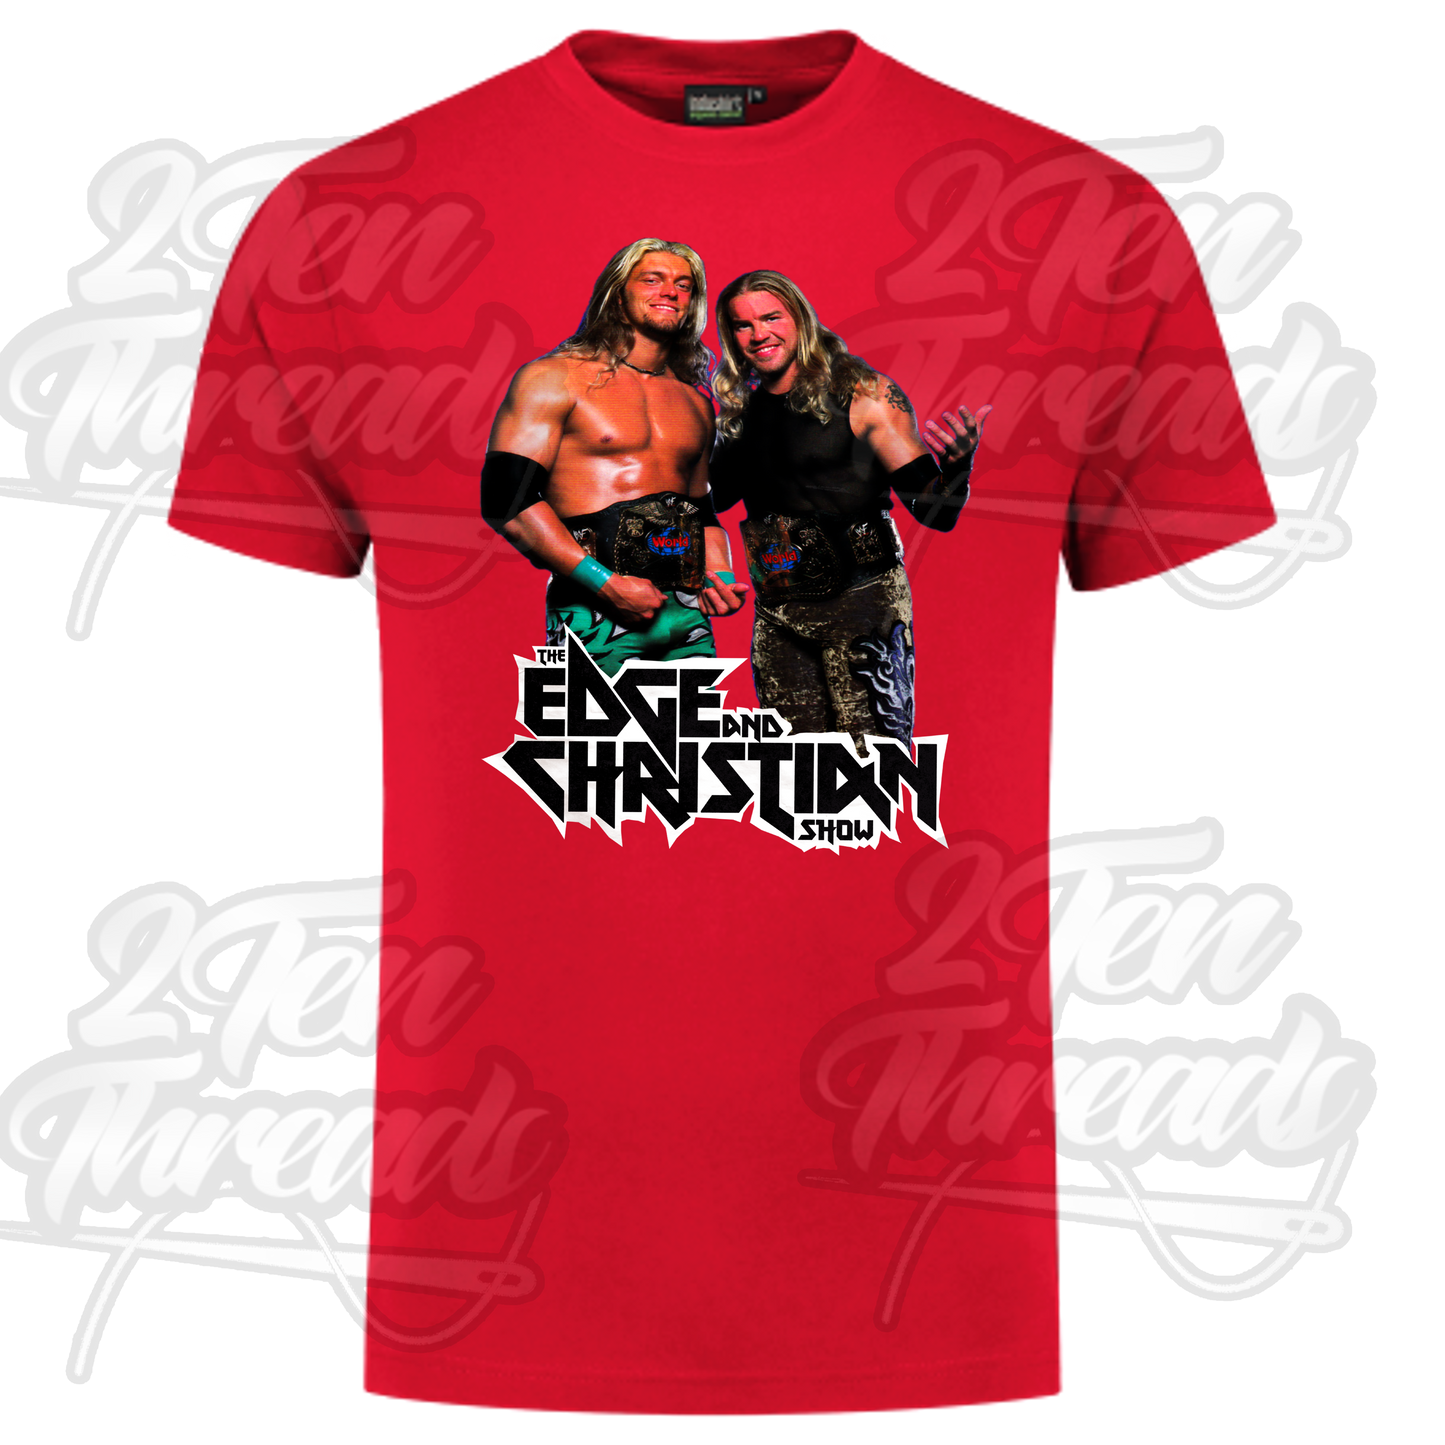 Edge and Christian Shirt